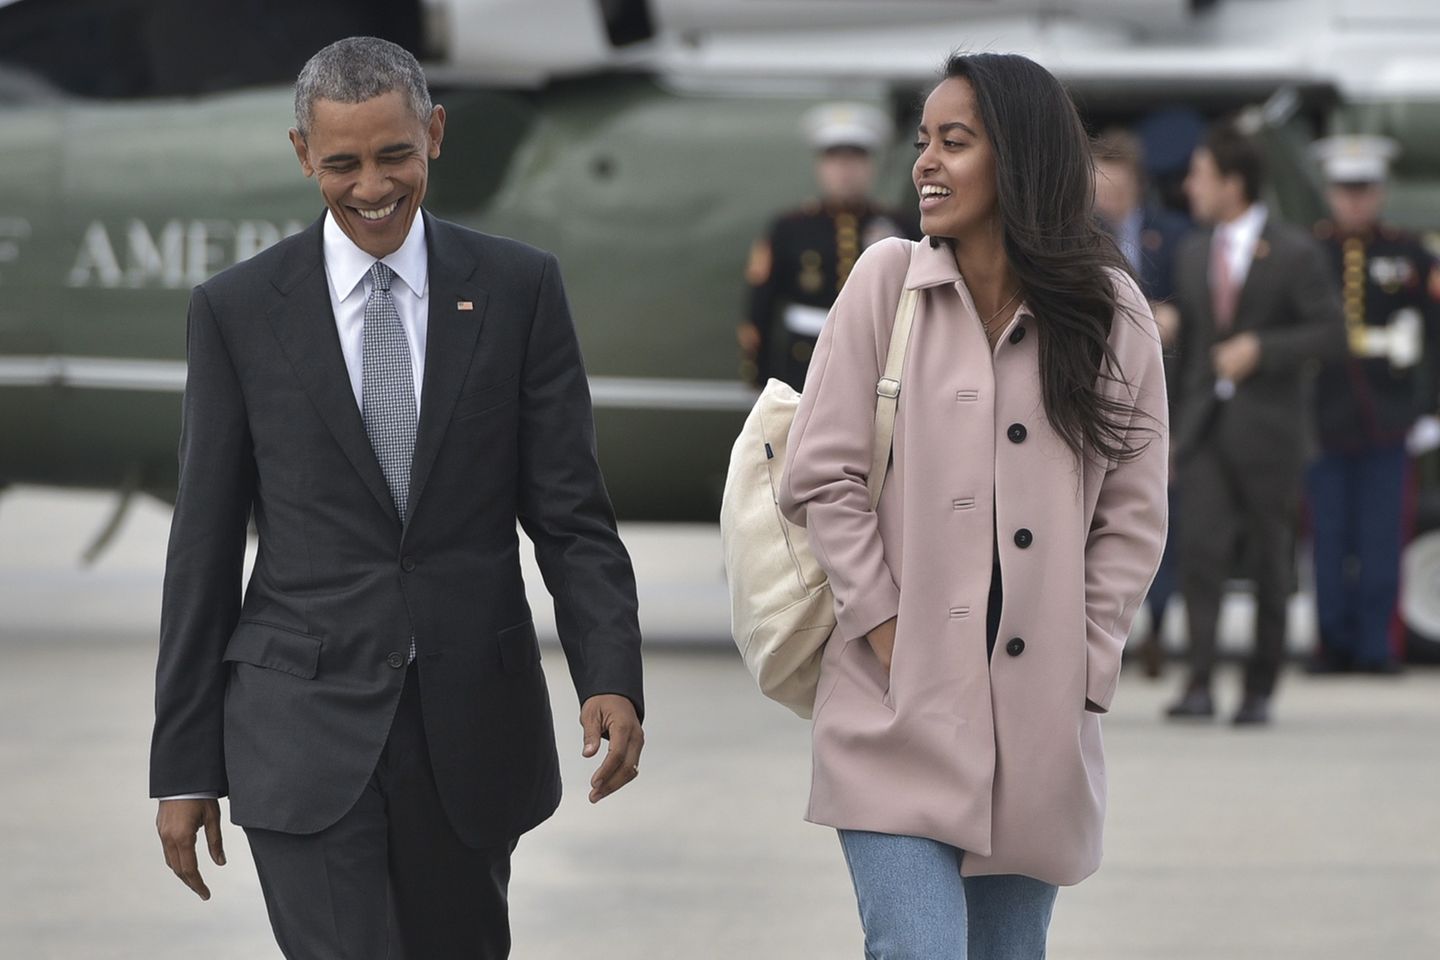 Beim Knutschen erwischt: Malia Obama frisch verliebt ❤️